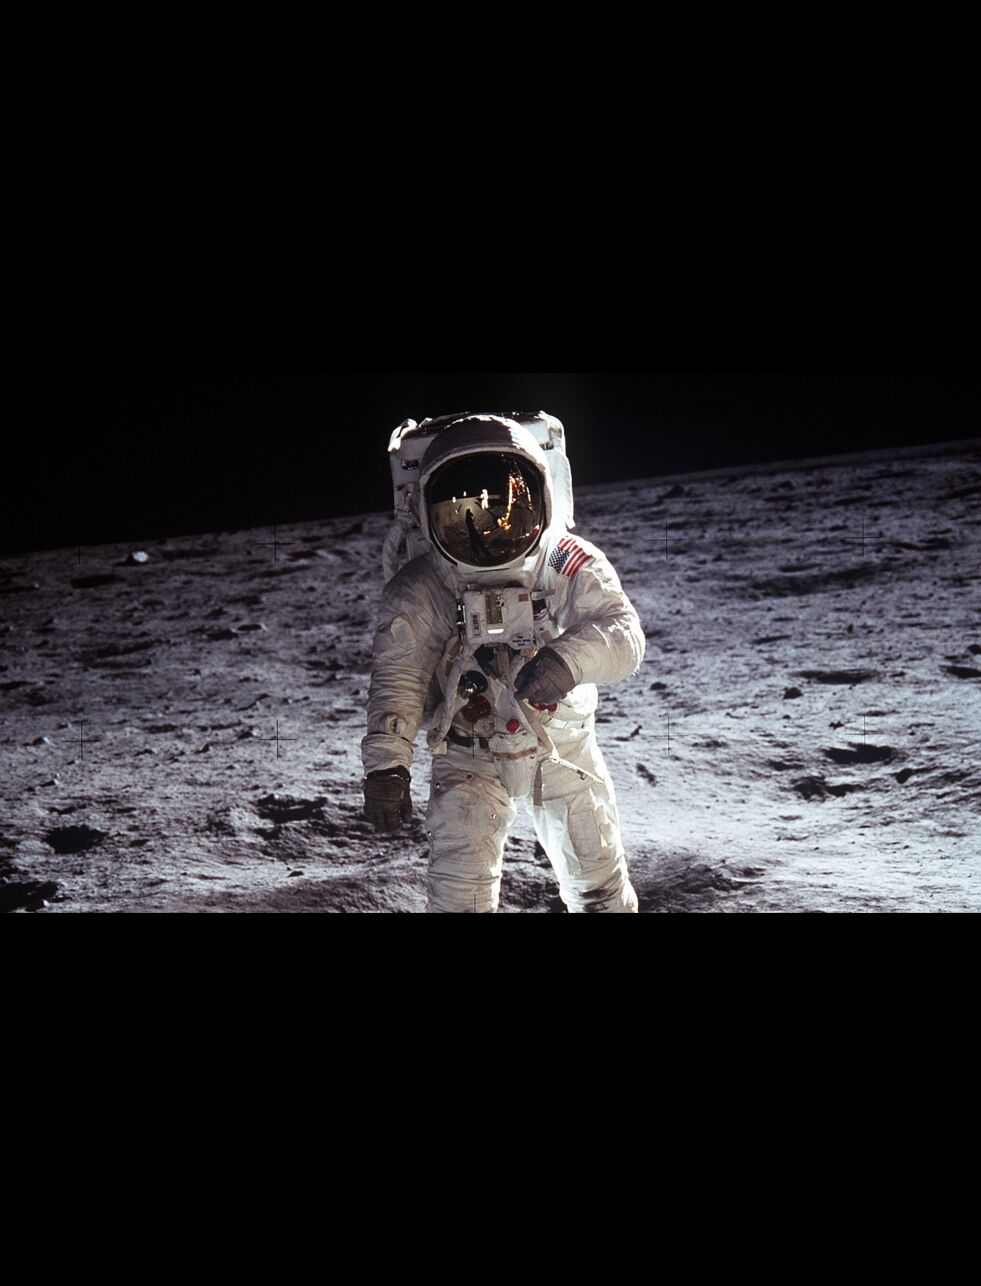 HISTORISK: Buzz Aldrin ble ikke førstemann på månen. De fleste bildene fra Stillhetens Hav er likevel av Aldrin, siden det var Neil Armstrong som var den ivrigste fotografen. Armstrong er imidlertid synlig i visiret til Aldrin.
 Foto: Nasa